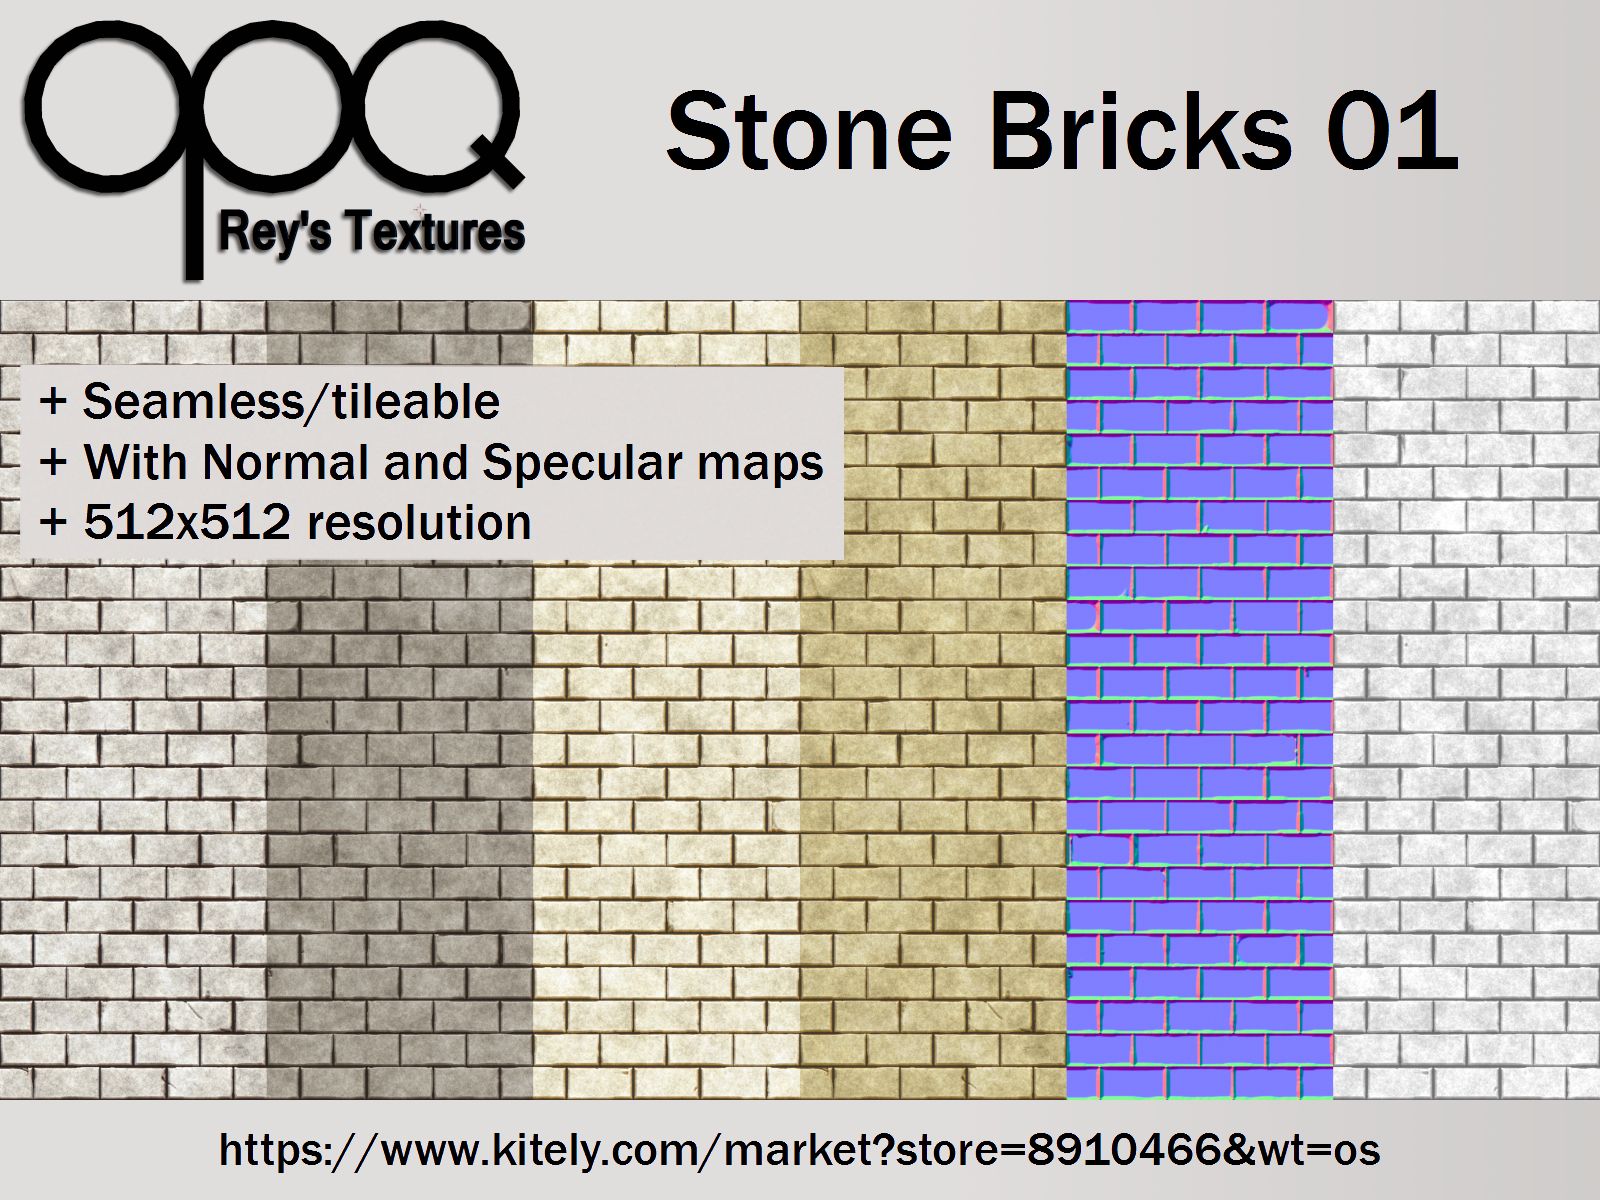 Rey's Stone Bricks 01 Poster Kitely.jpg